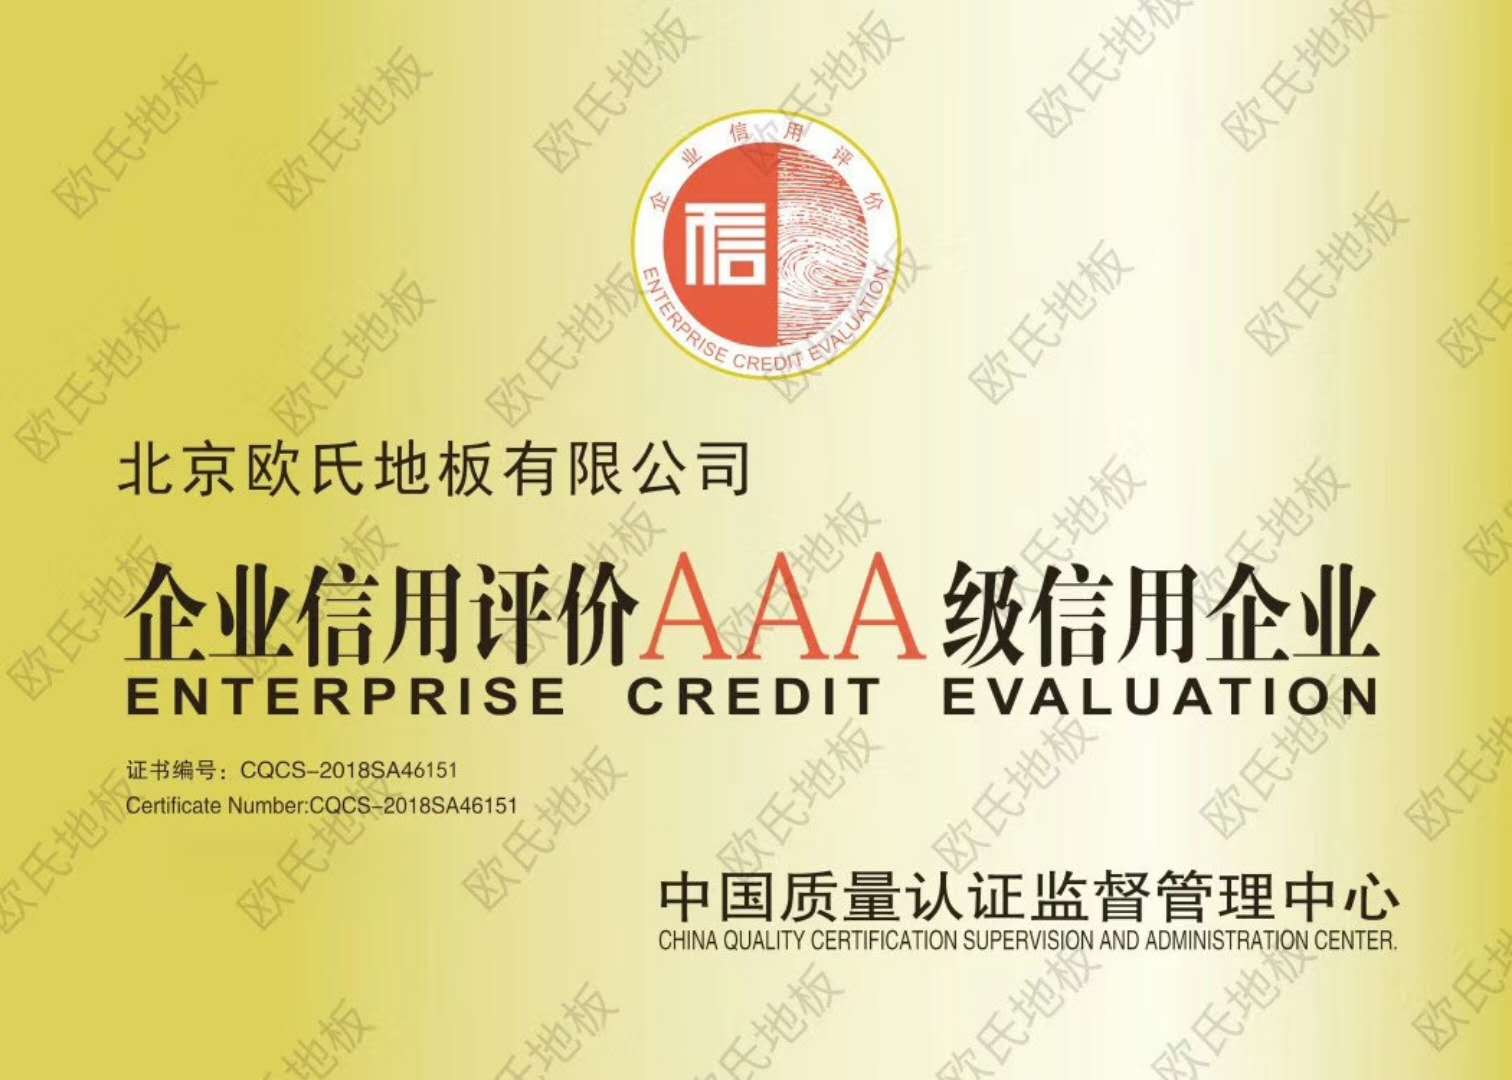 北京歐氏運動木地板有限公司被評為AAA信用企業